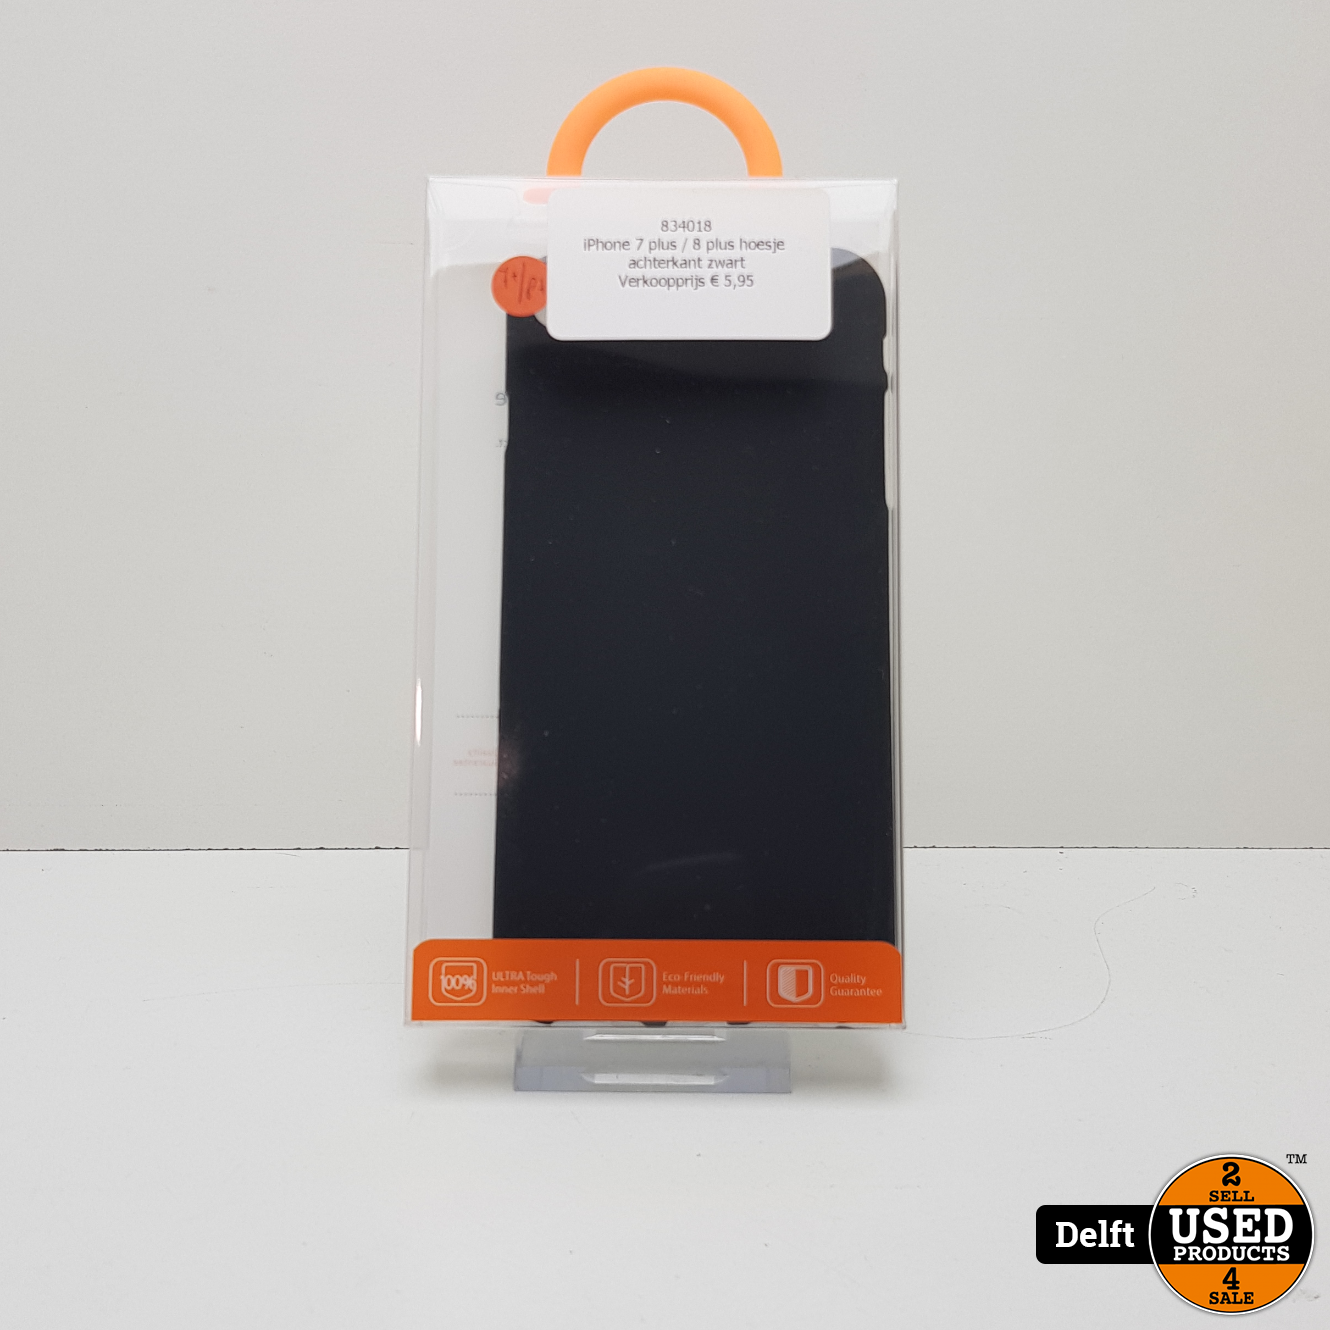 Productiecentrum naam Vormen iPhone 7 plus / 8 plus hoesje achterkant zwart 1 maand garantie - Used  Products Delft